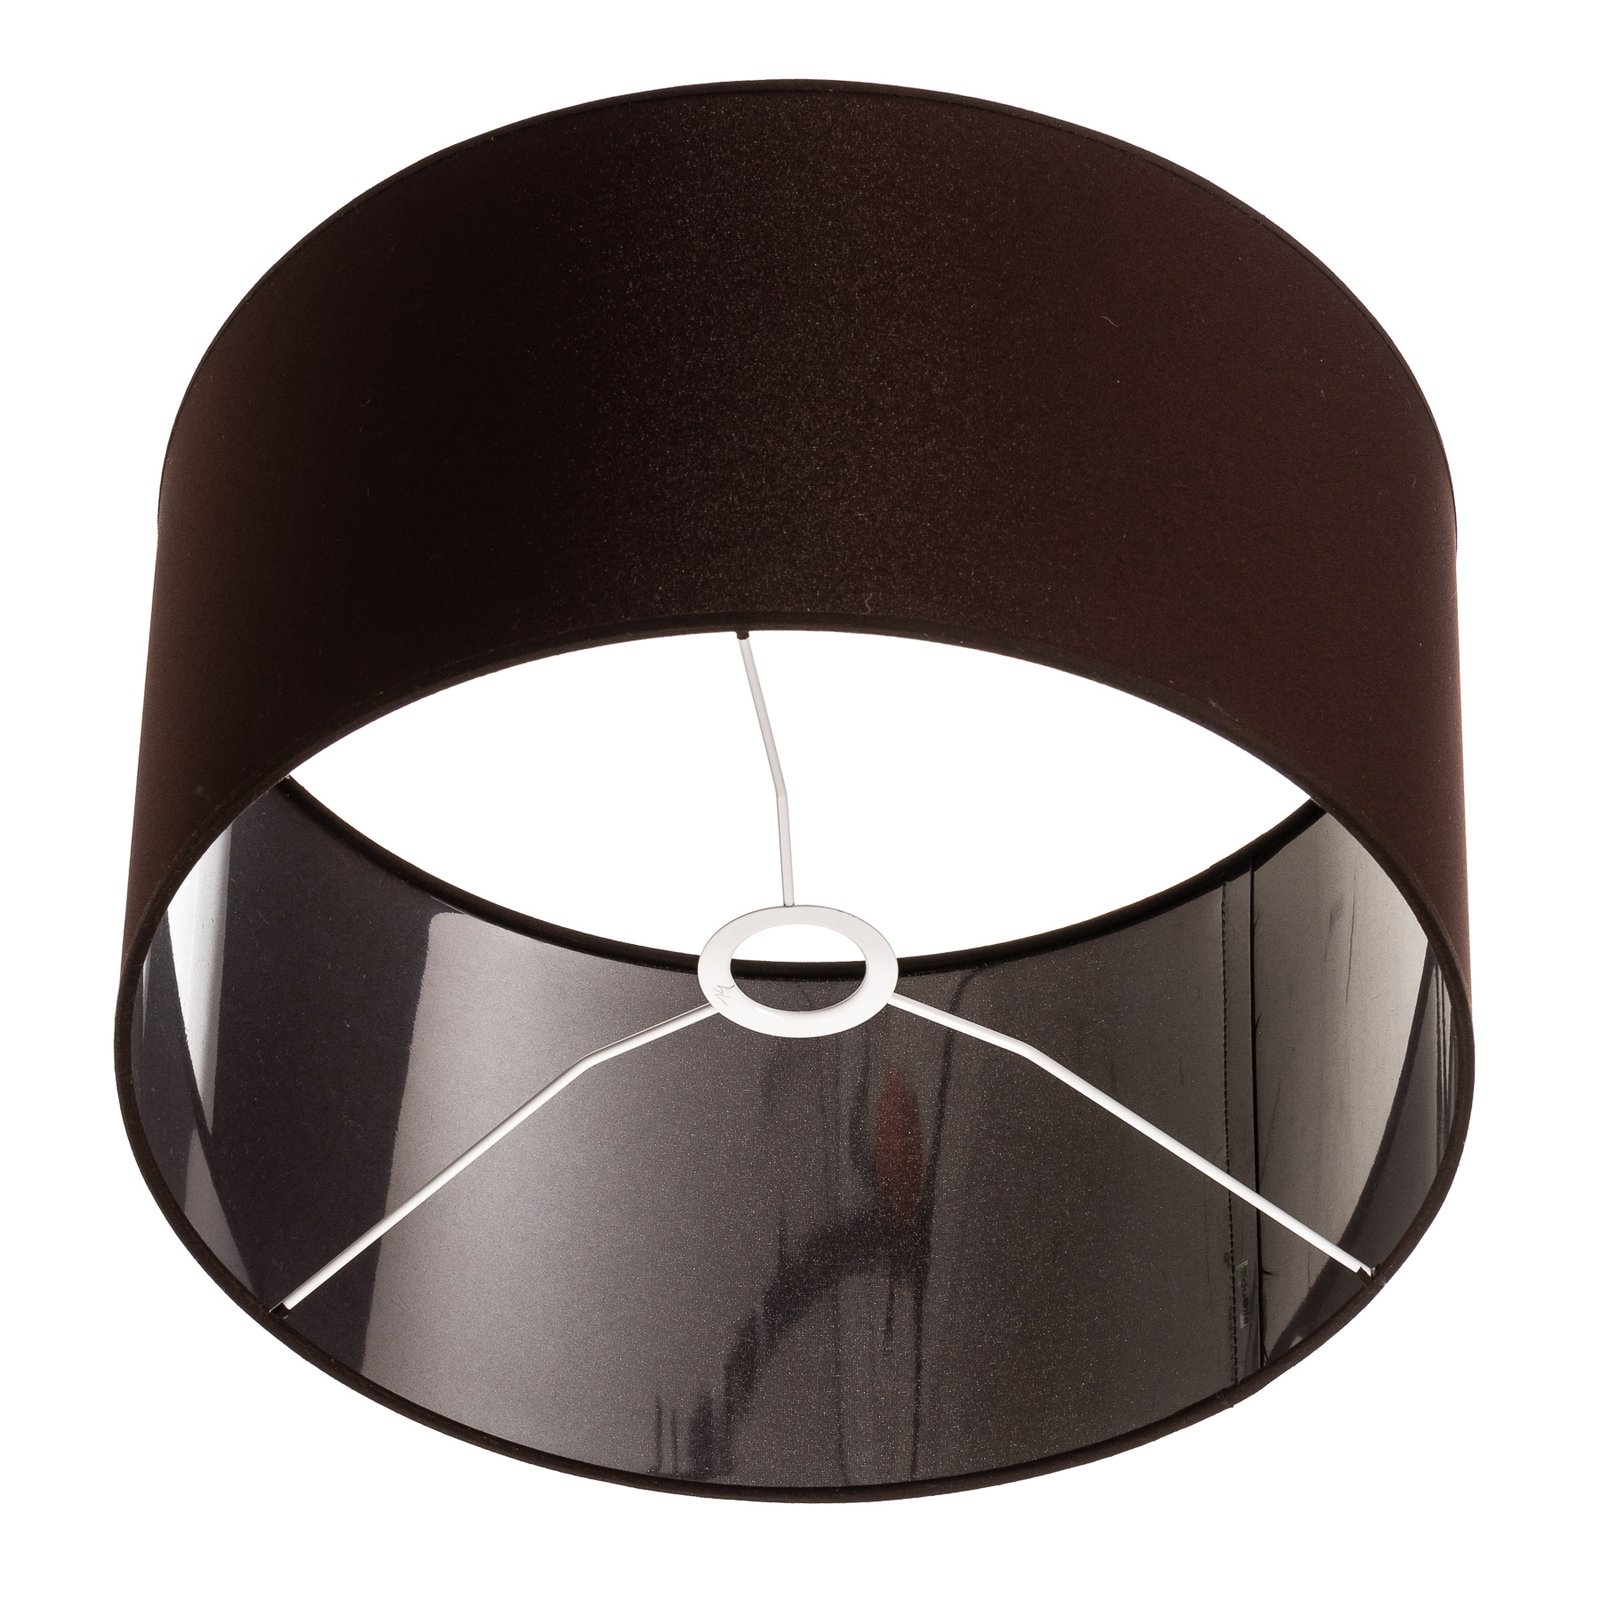 Roller lámpaernyő sötétbarna Ø 40 cm, 22 cm magas